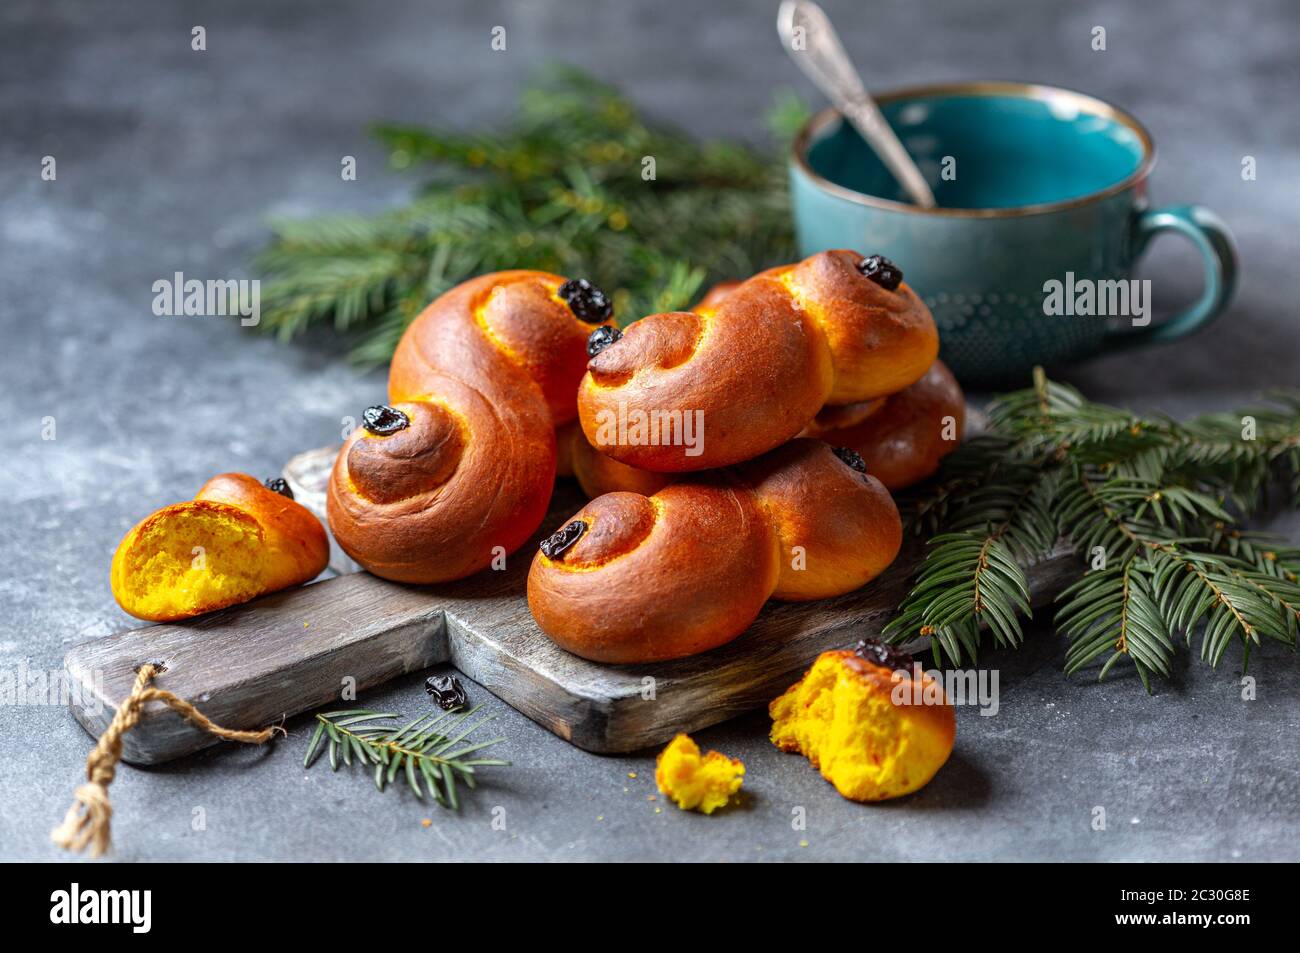 Petits pains suédois faits maison avec safran et raisins secs. Banque D'Images